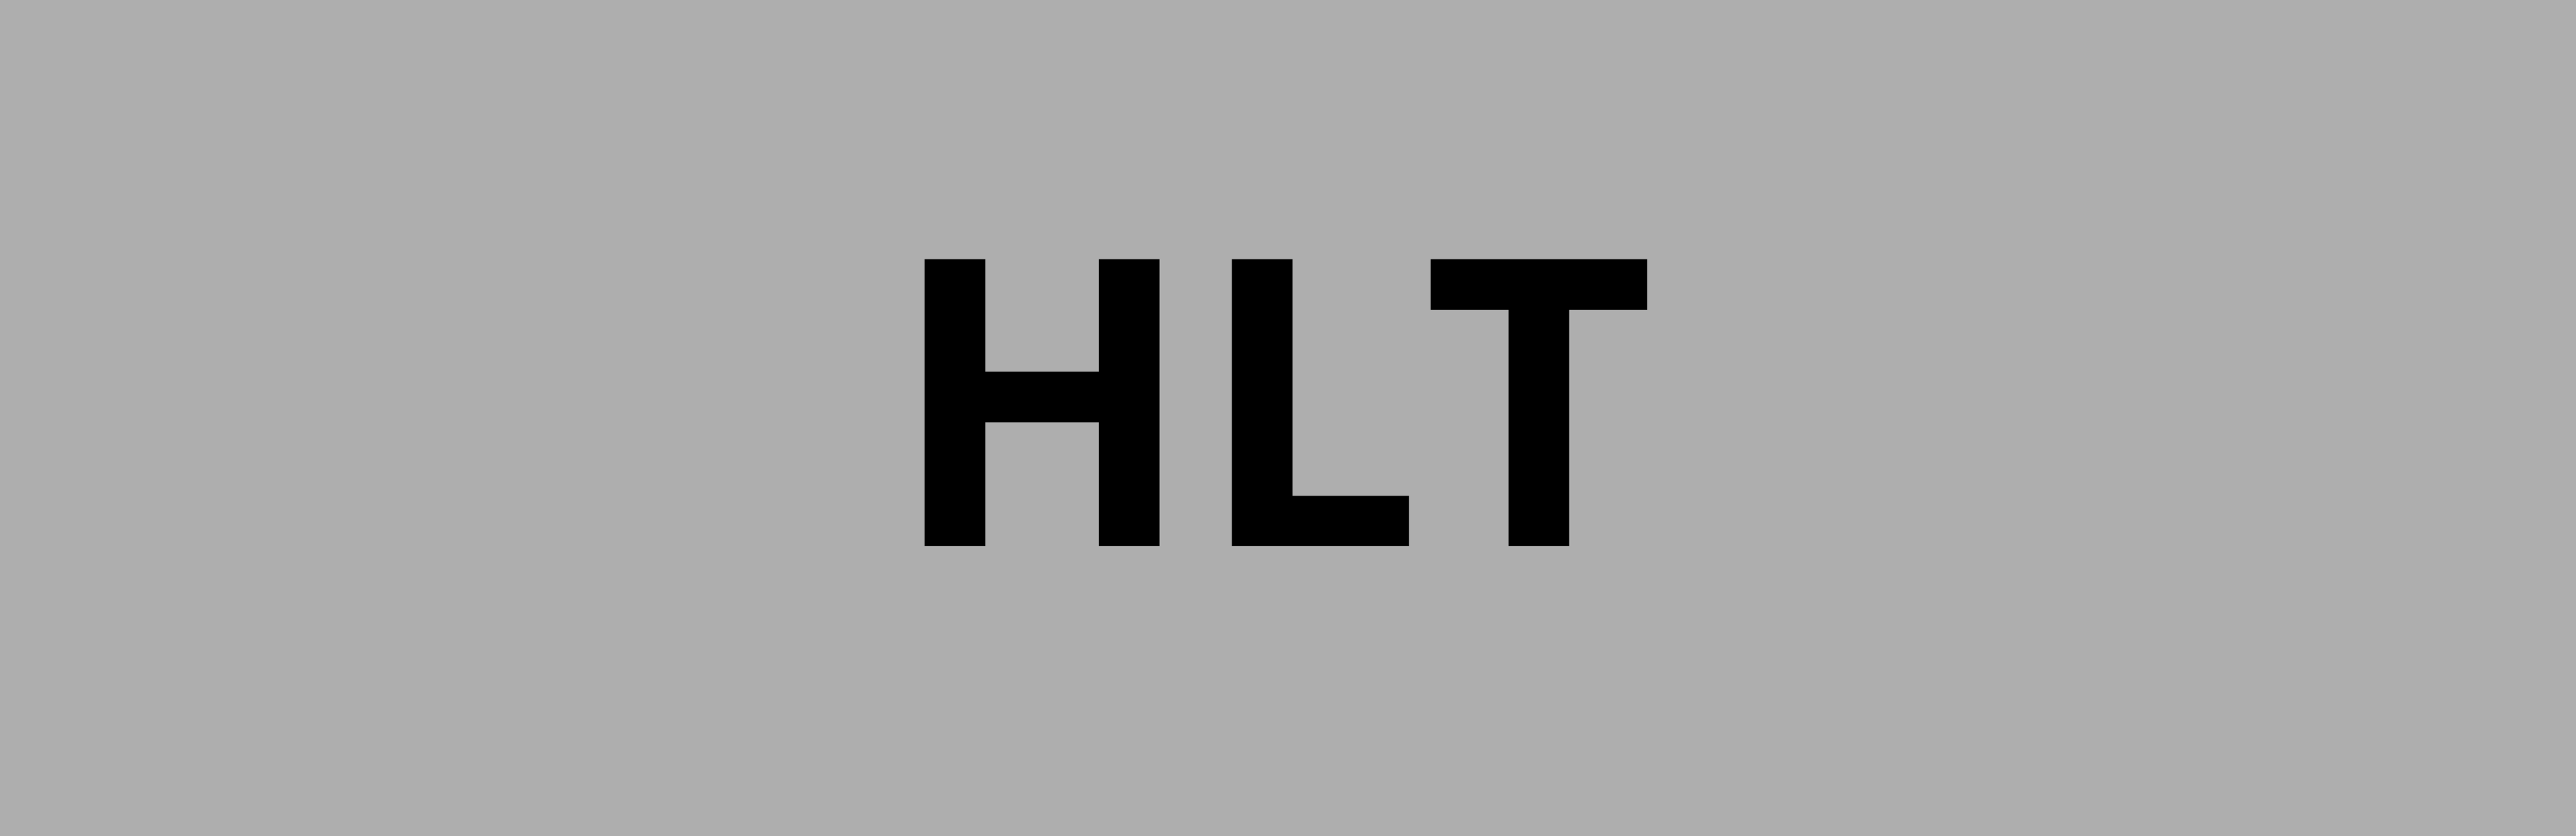 hlt_logo.png